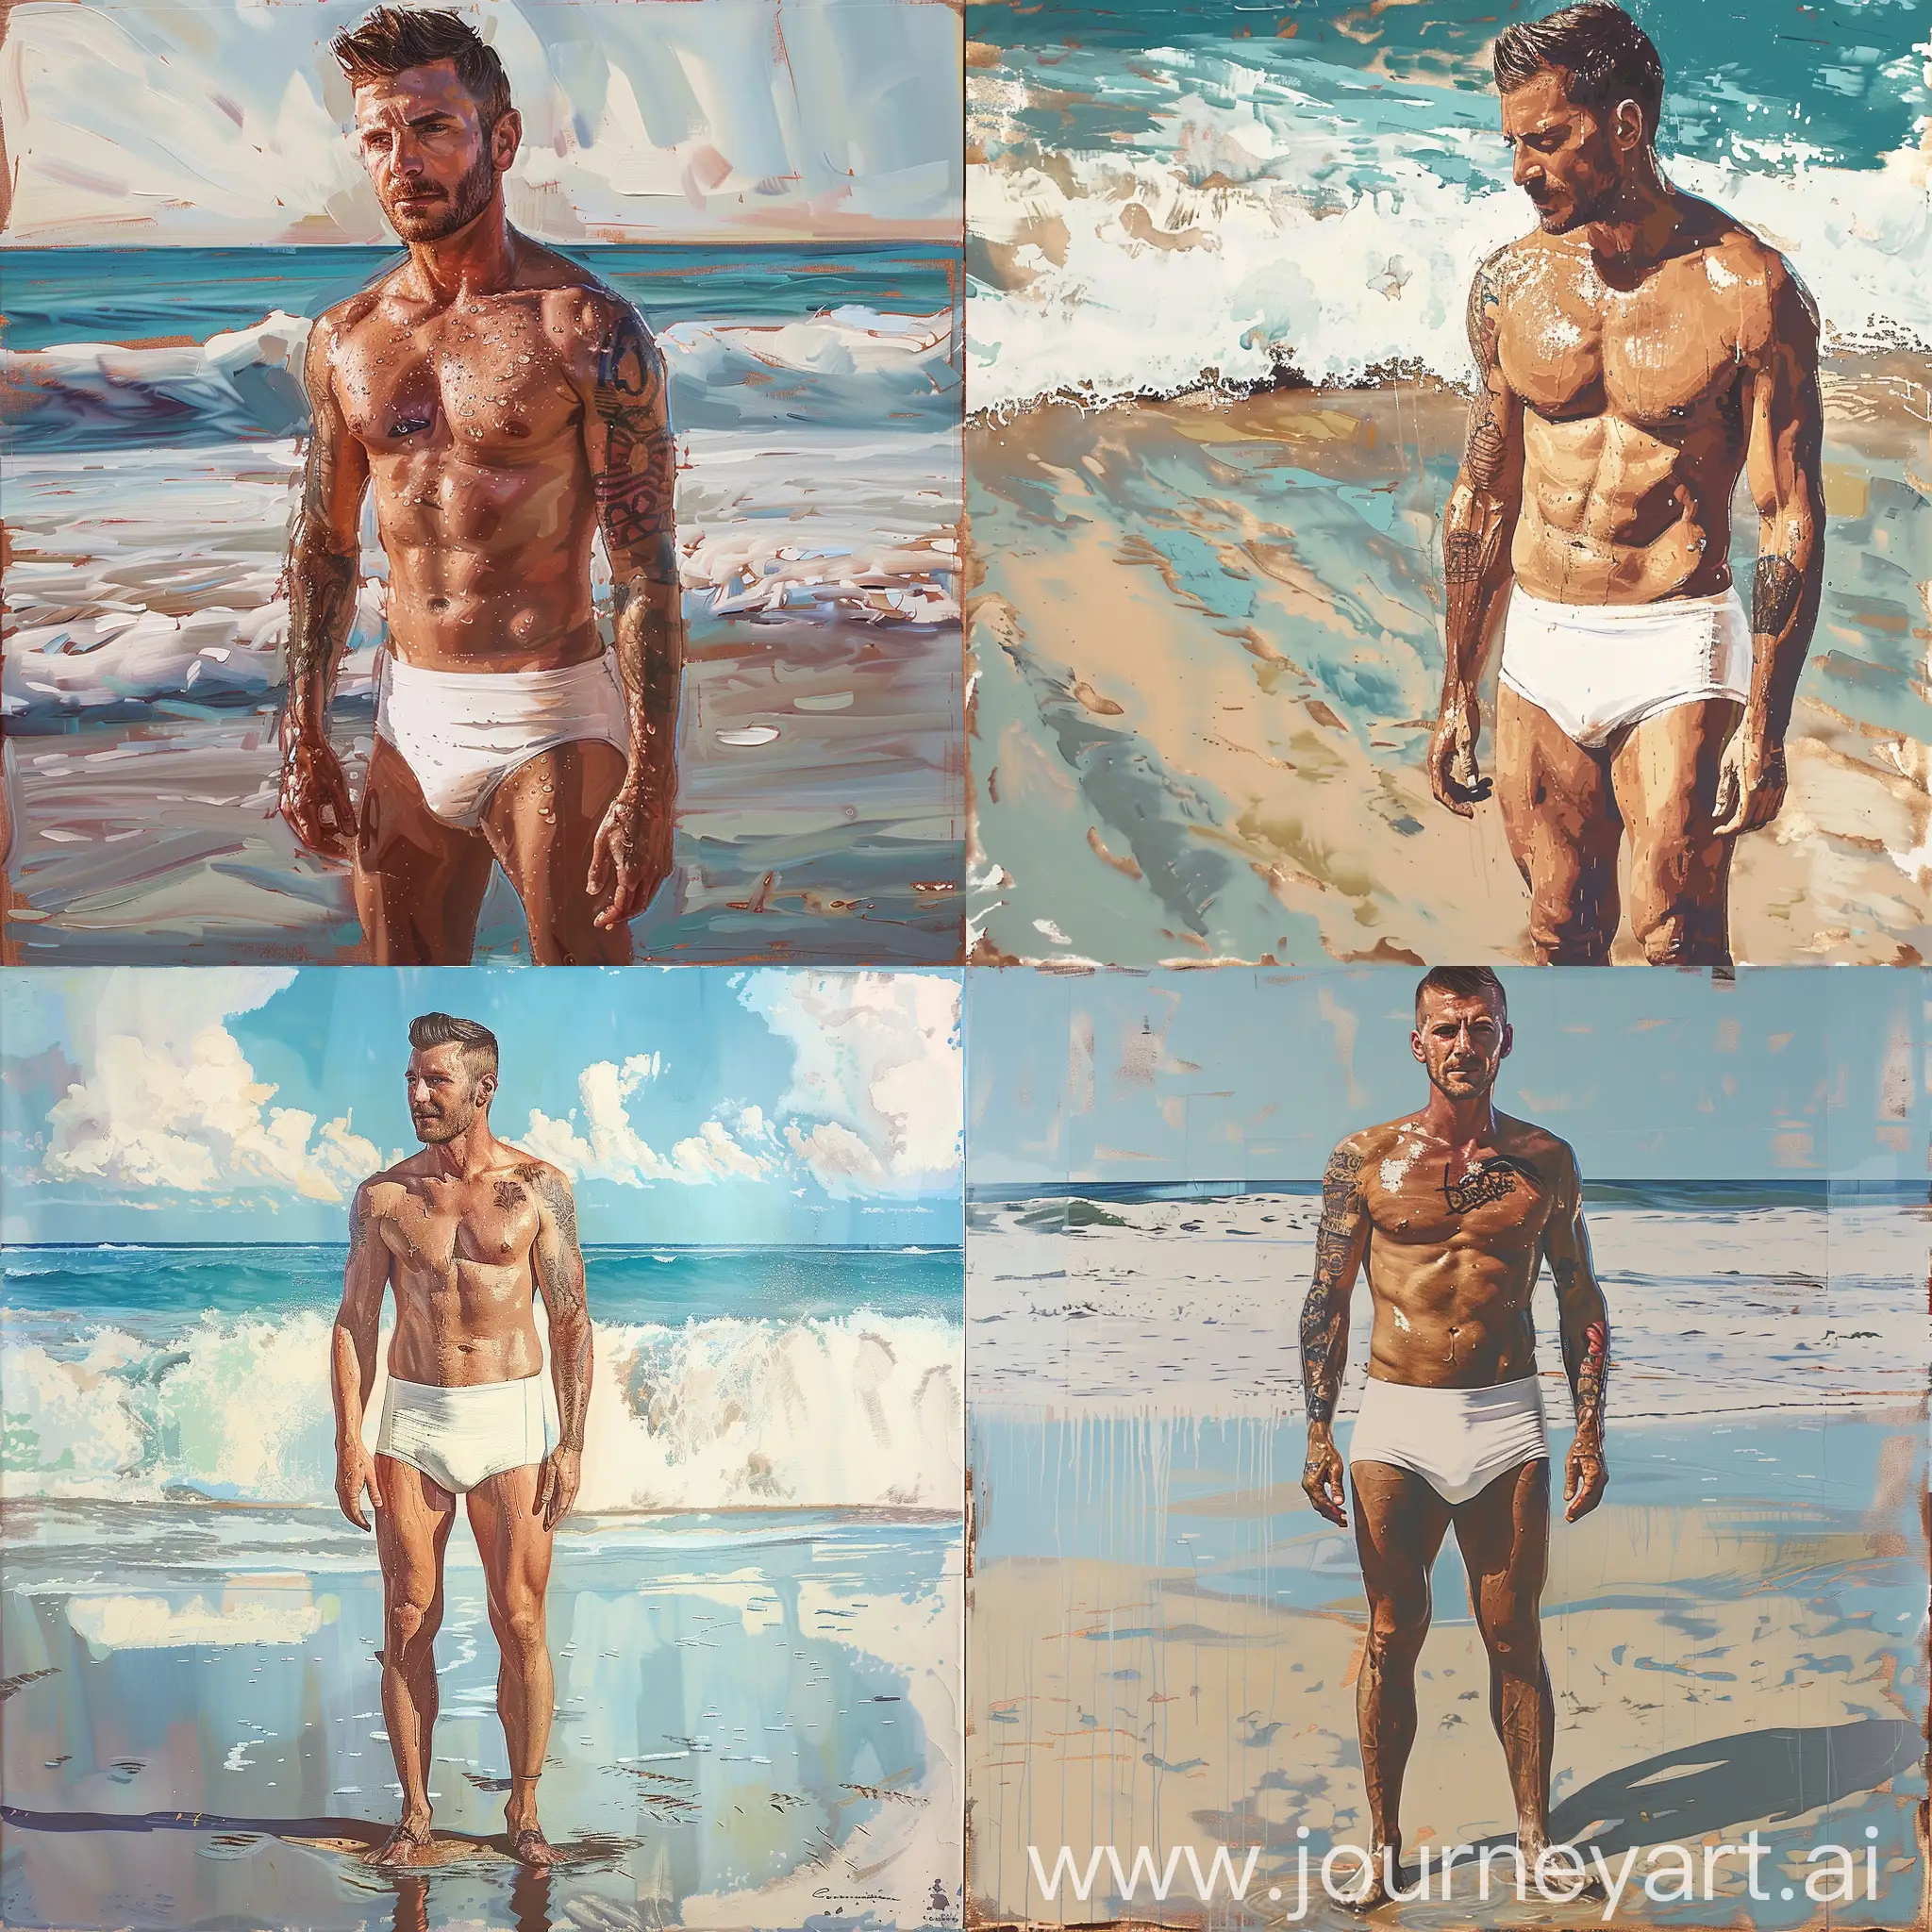 David-Beckham-in-Andy-WarholInspired-Speedo-Beach-Portrait